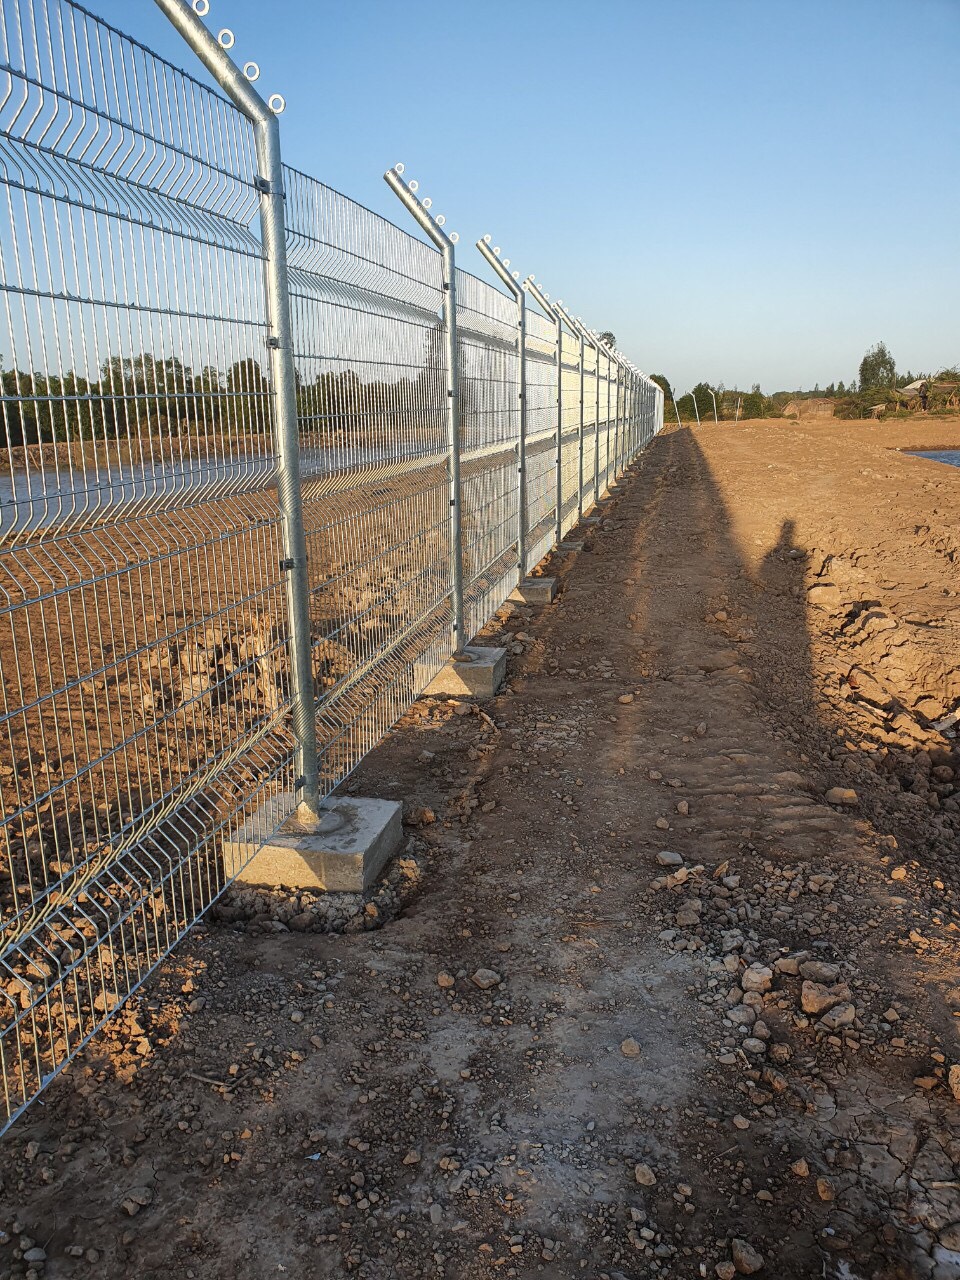 Hàng rào lưới thép hàn là gì? Quy trình sản xuất hàng rào lưới thép hàn